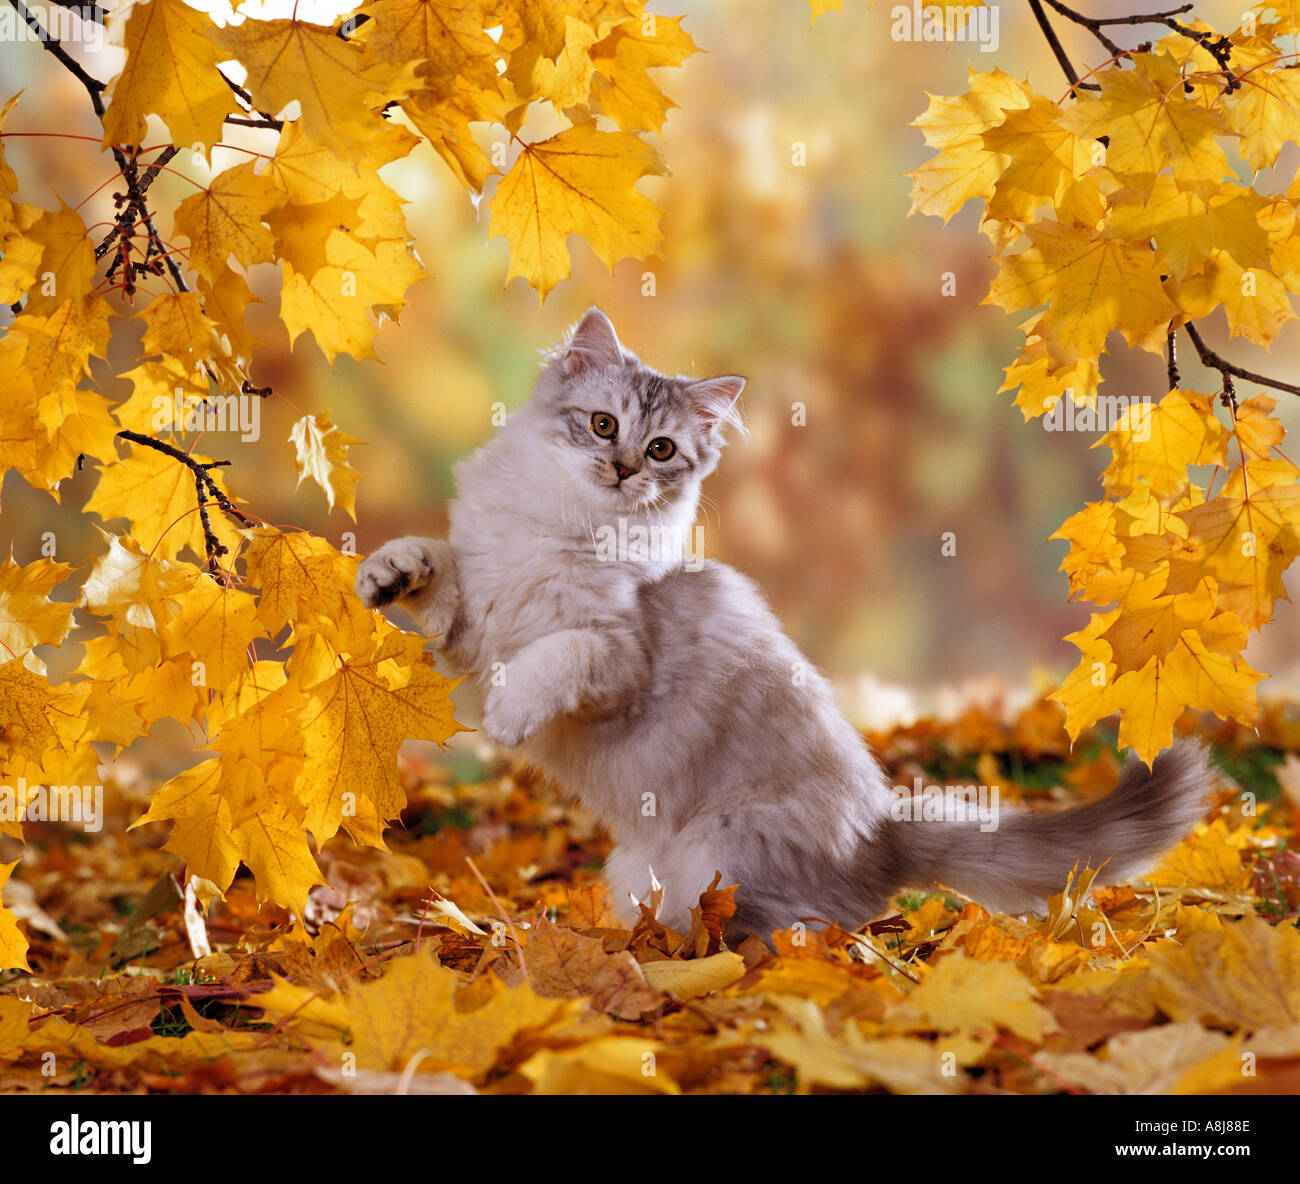 domestic-cat-kitten-in-autumn-foliage-11-weeks-A8J88E.jpg